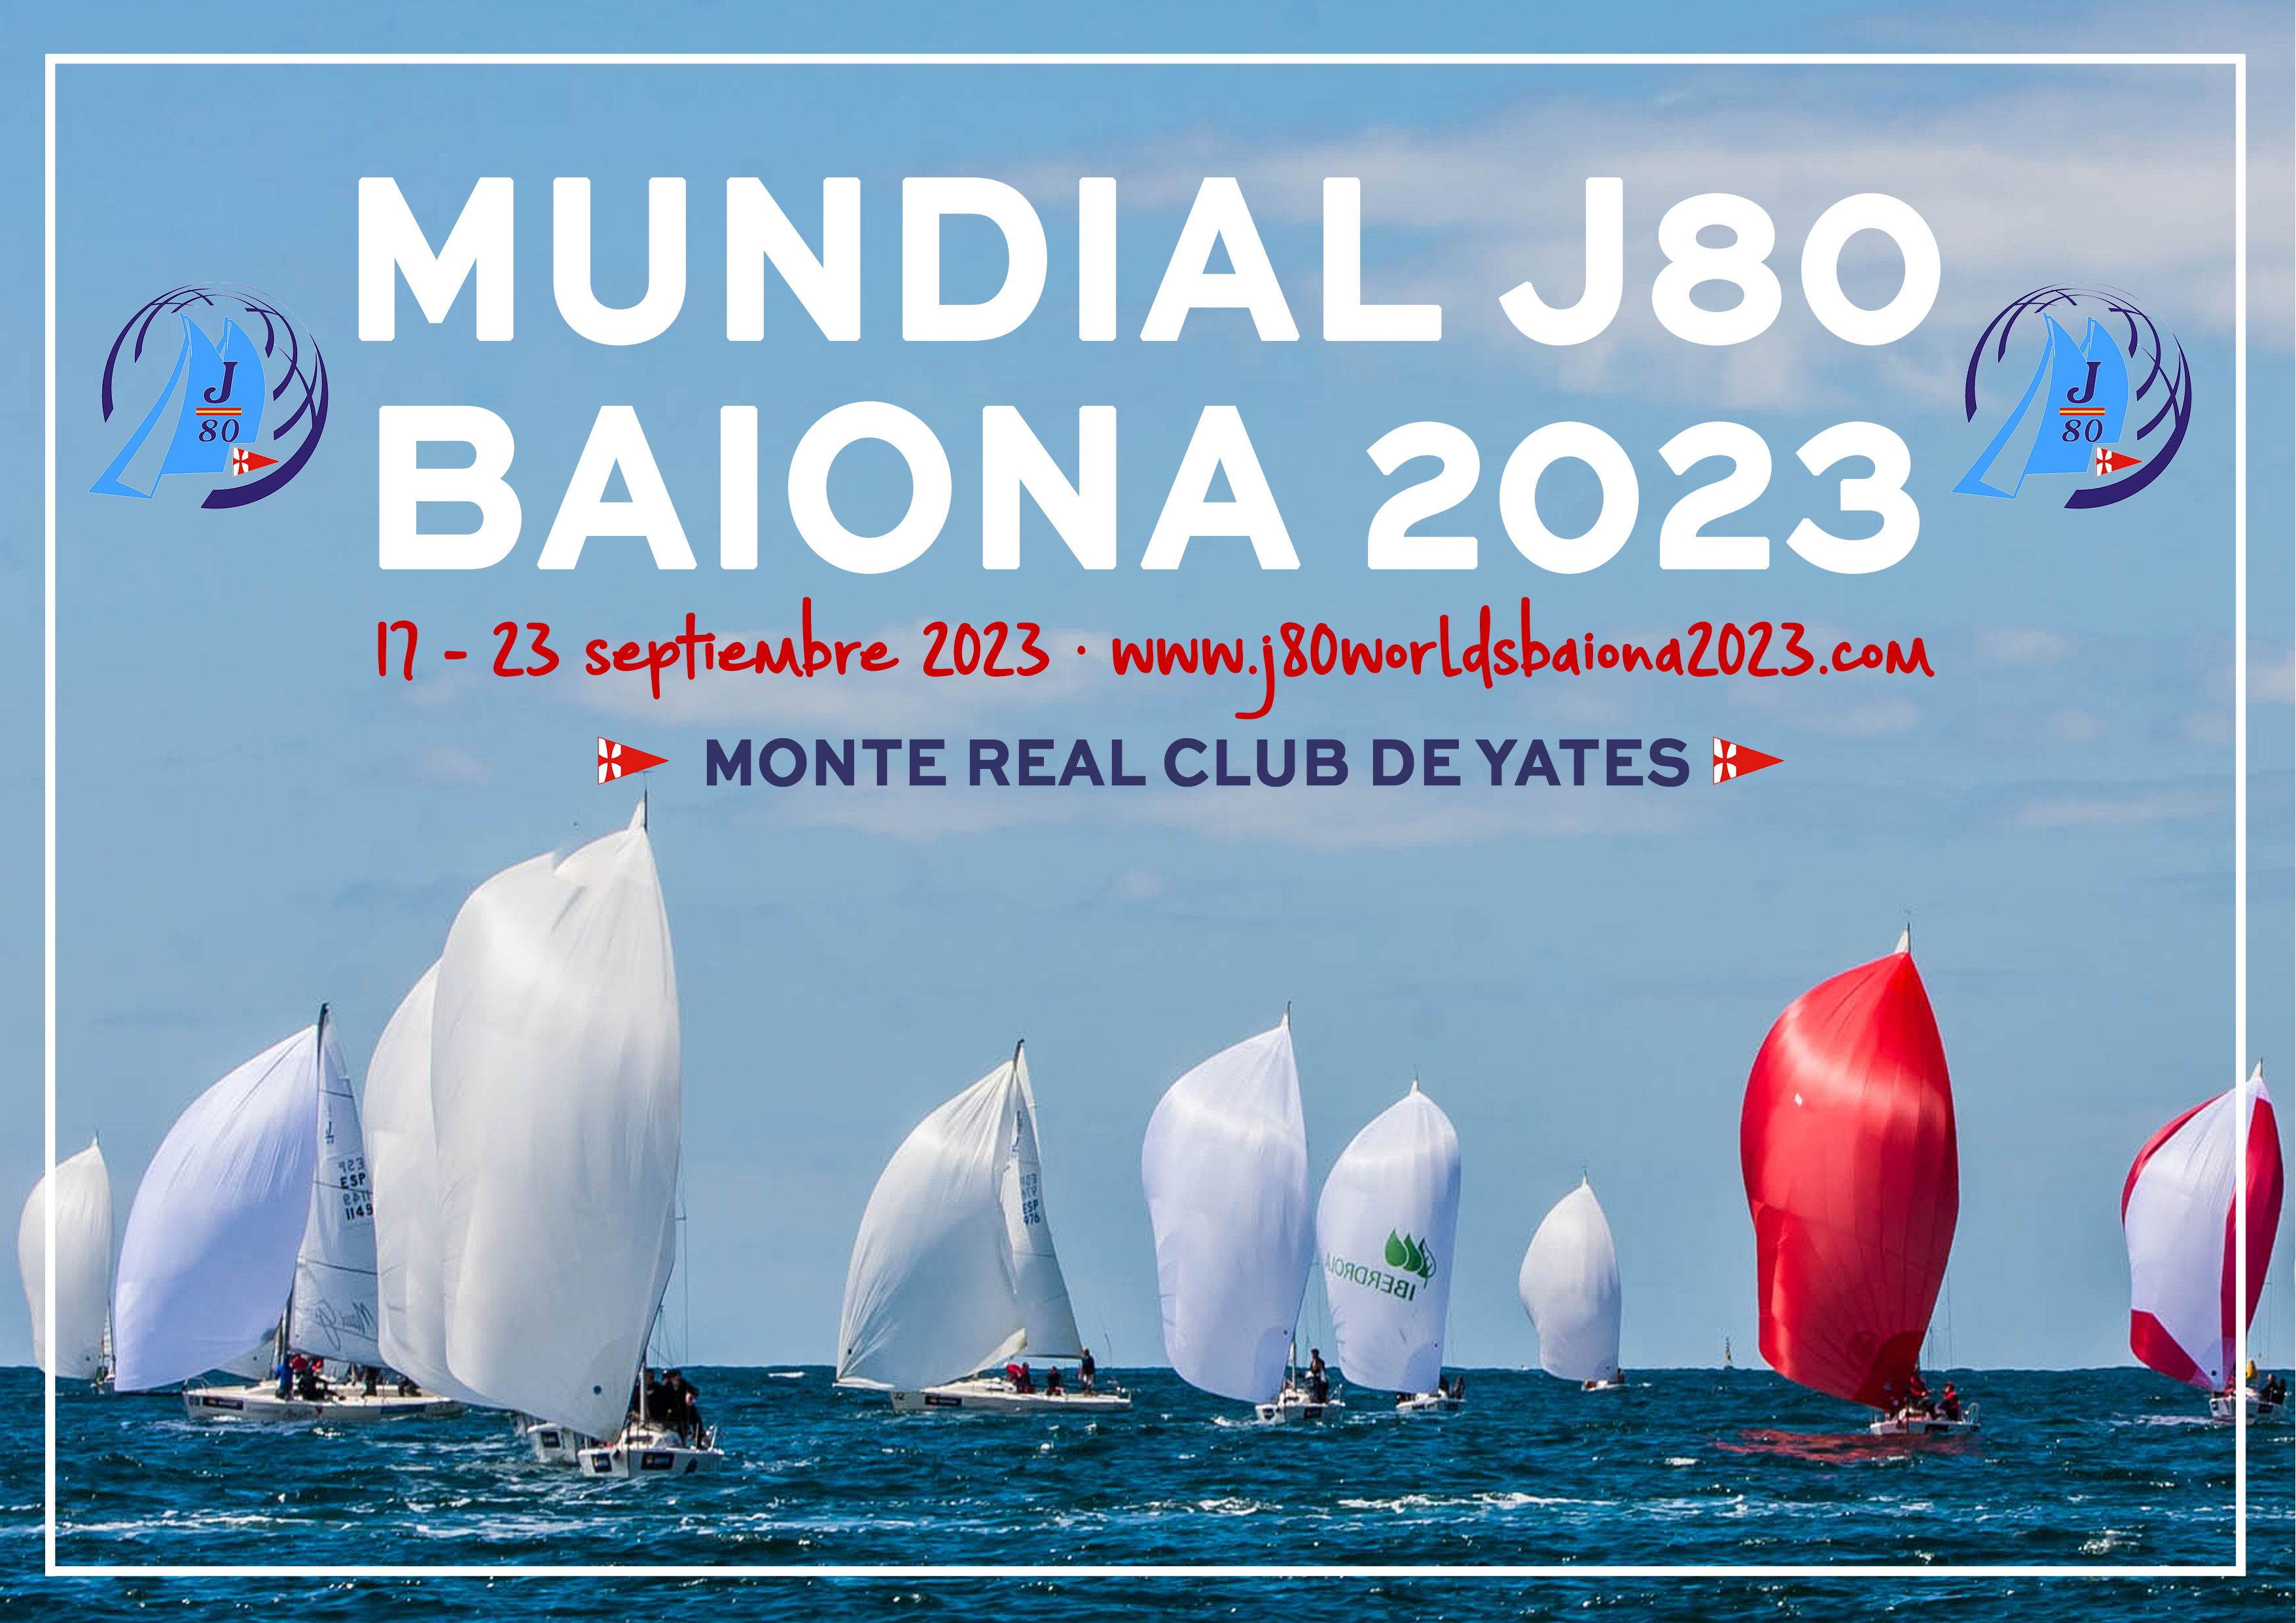 Mundial de la clase J80 de vela en 2023 Baiona· Monte Real Club de Yates Baiona